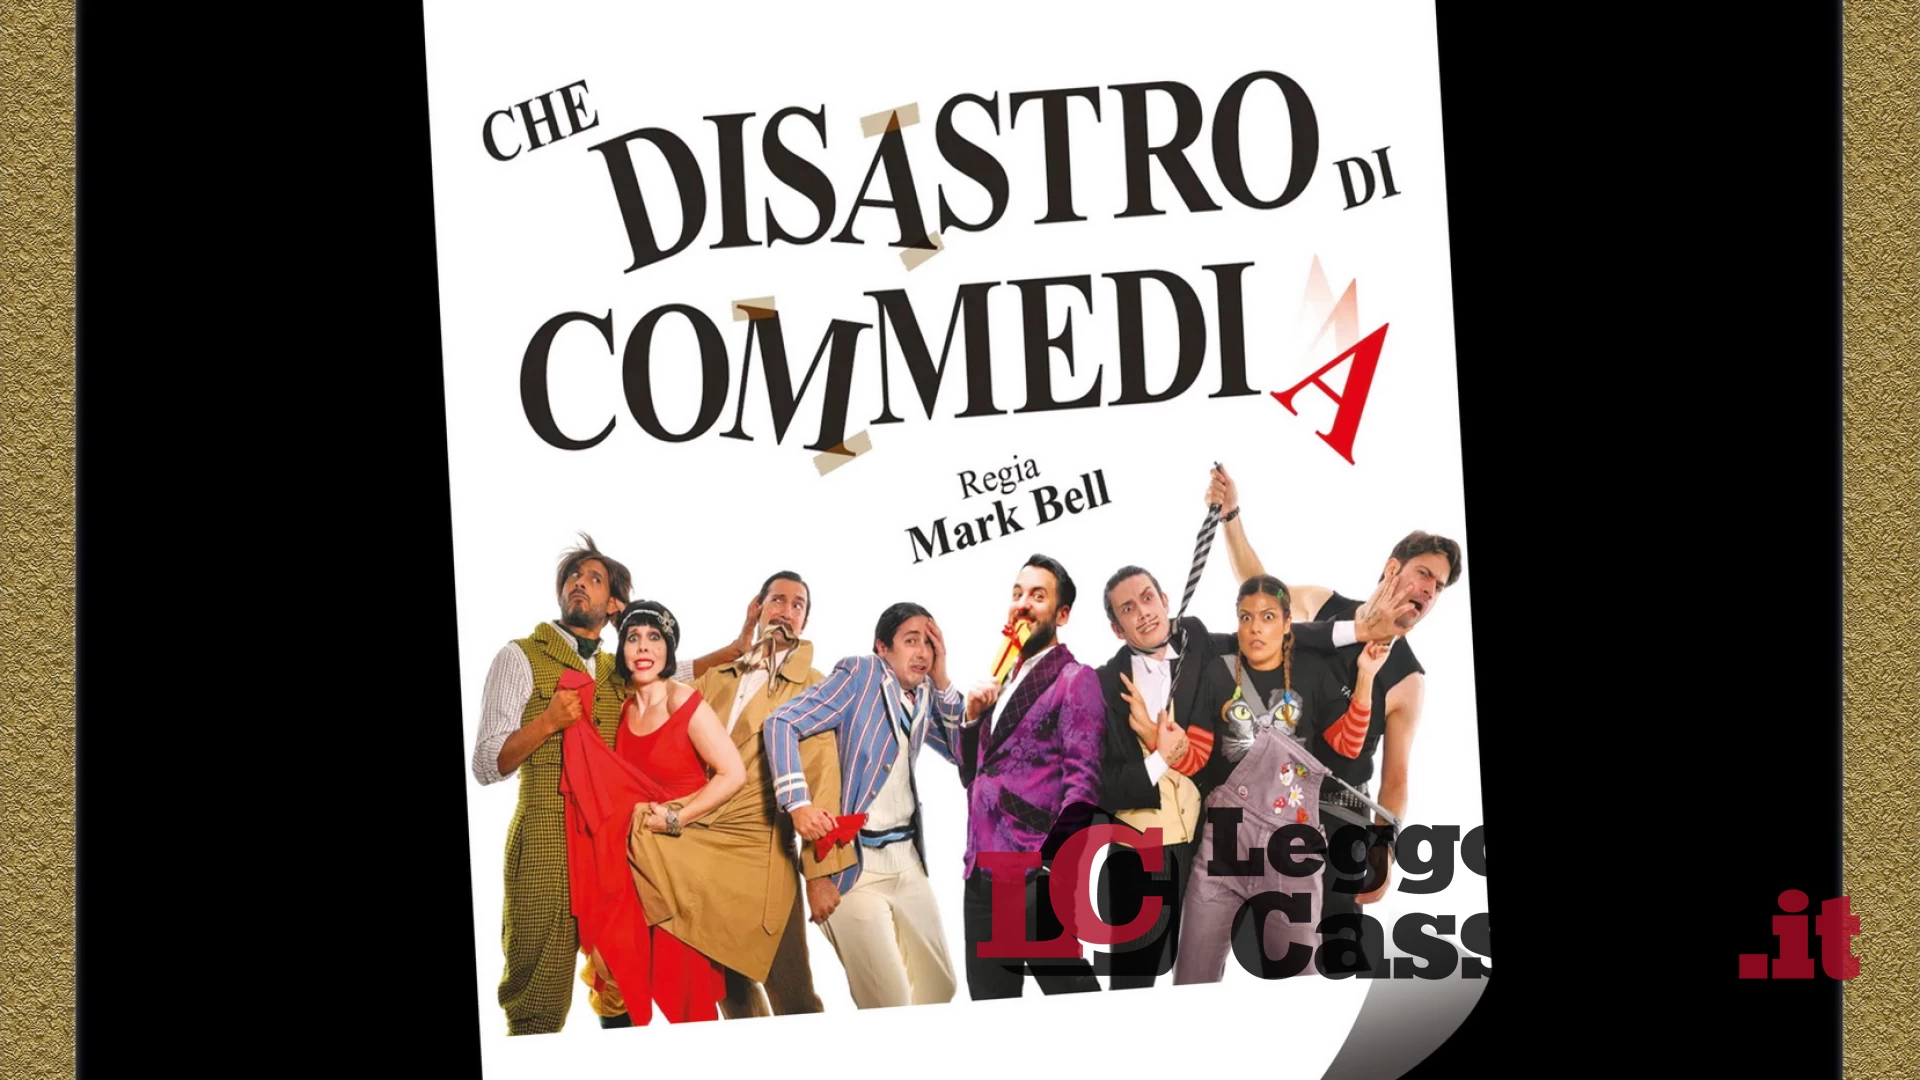 “Che disastro di commedia” il 13 aprile al Cinema Teatro Manzoni